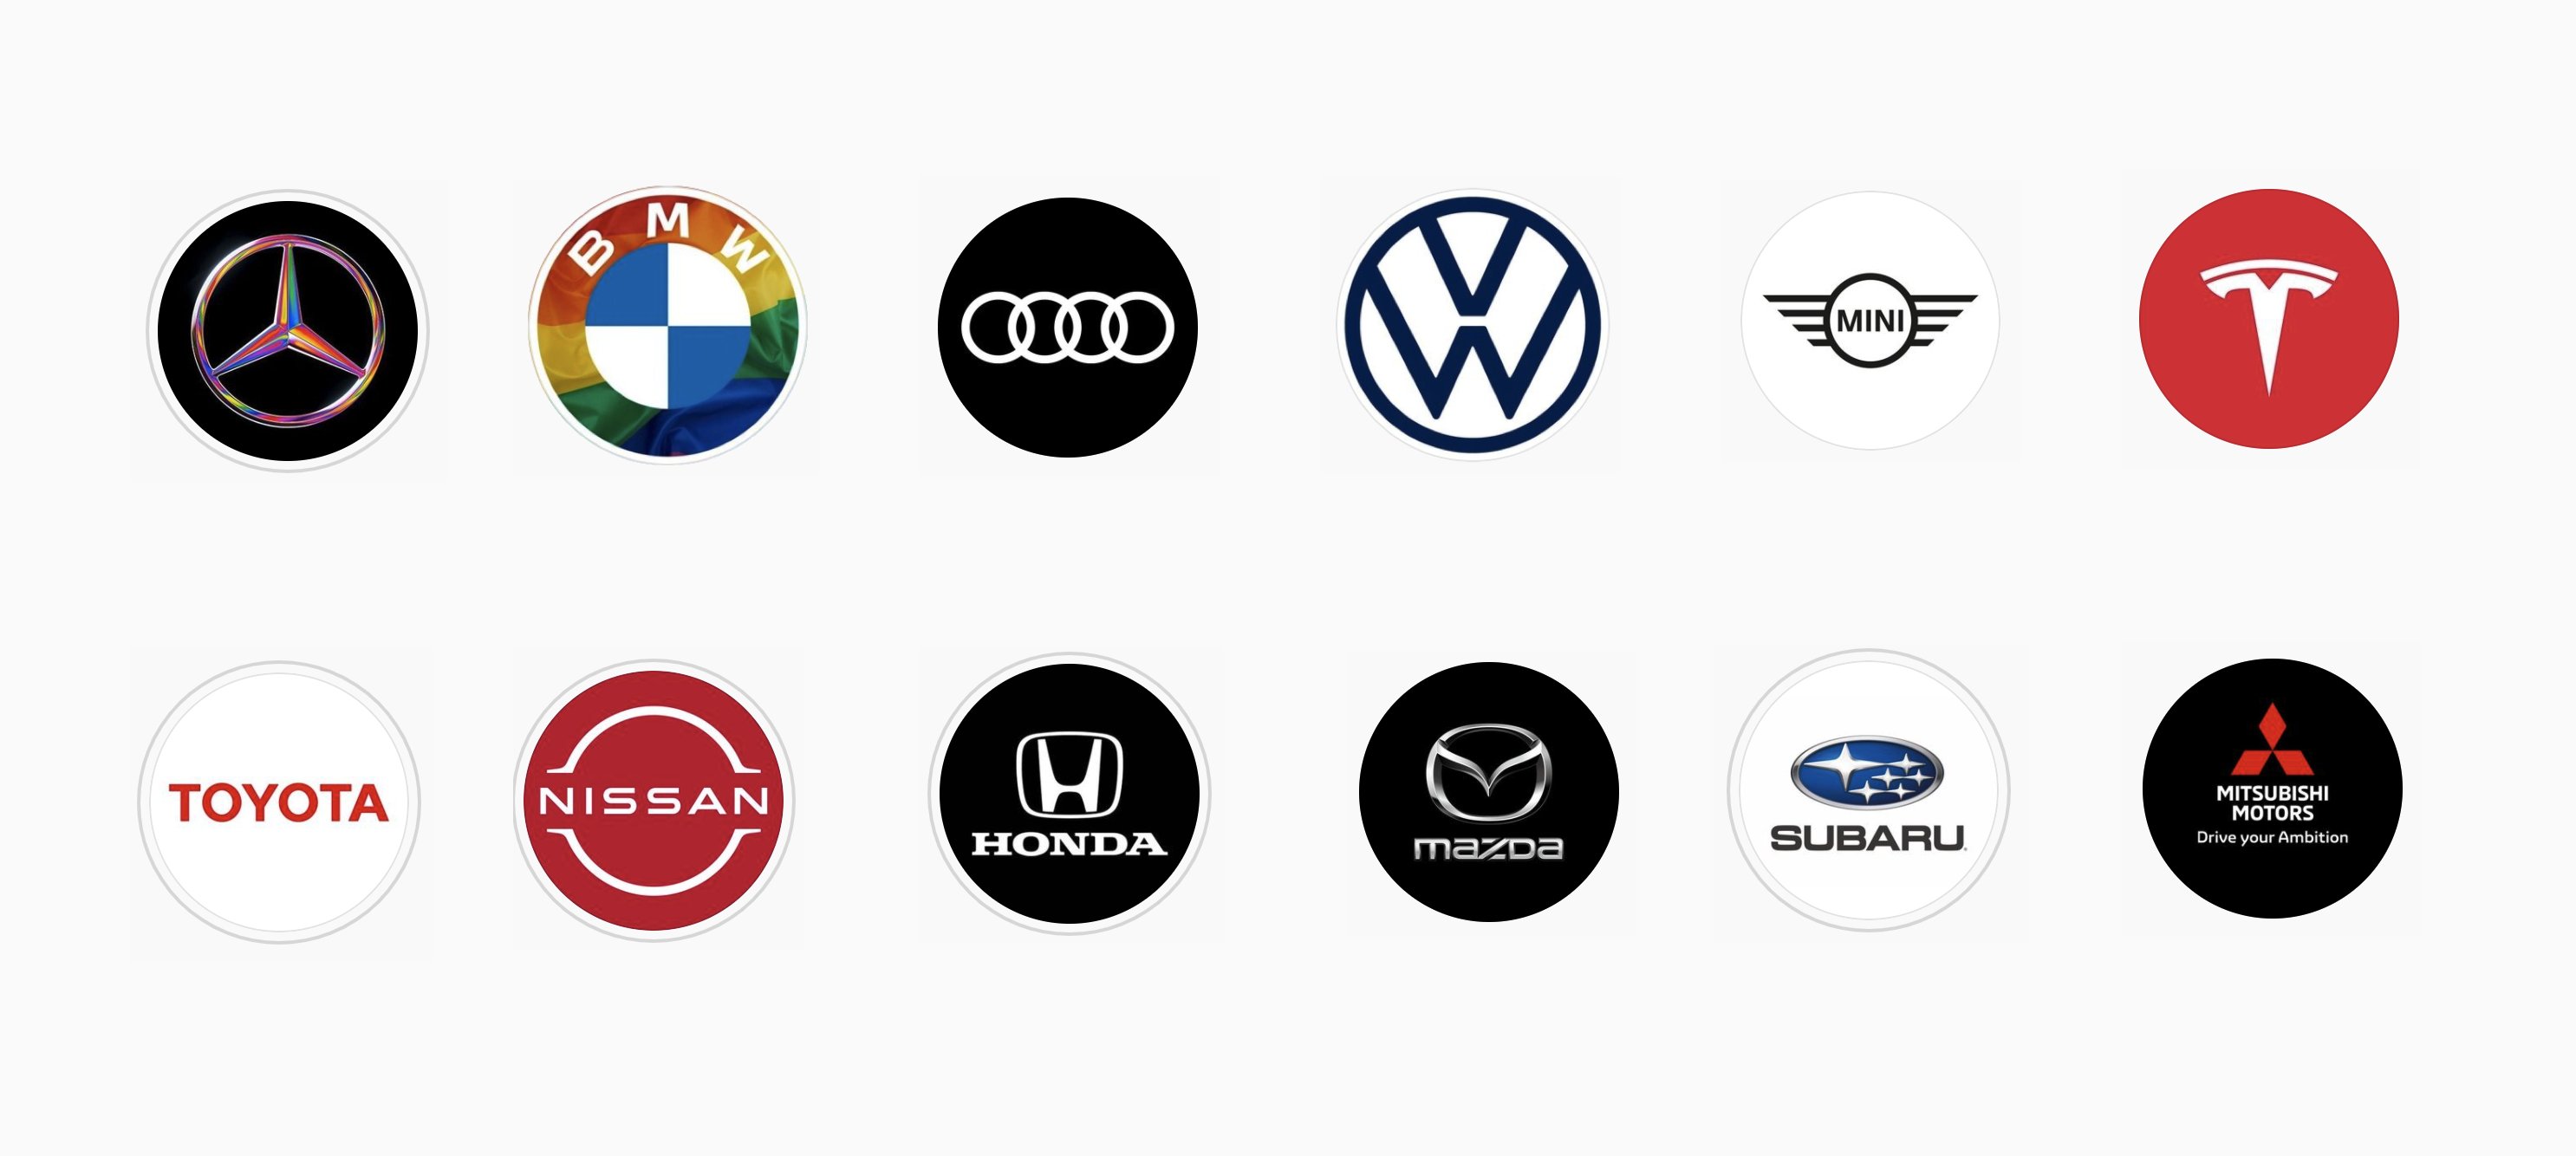 Go Ando The Guild ざっと海外 日本の車メーカーのinstagramのアイコンを並べてみると 海外メーカーの方がソーシャルに親和性が高いのが良くわかる Bmwはリブランディングで外周を透明にしたので 今月のプライド月間への対応など柔軟 日産の新しい